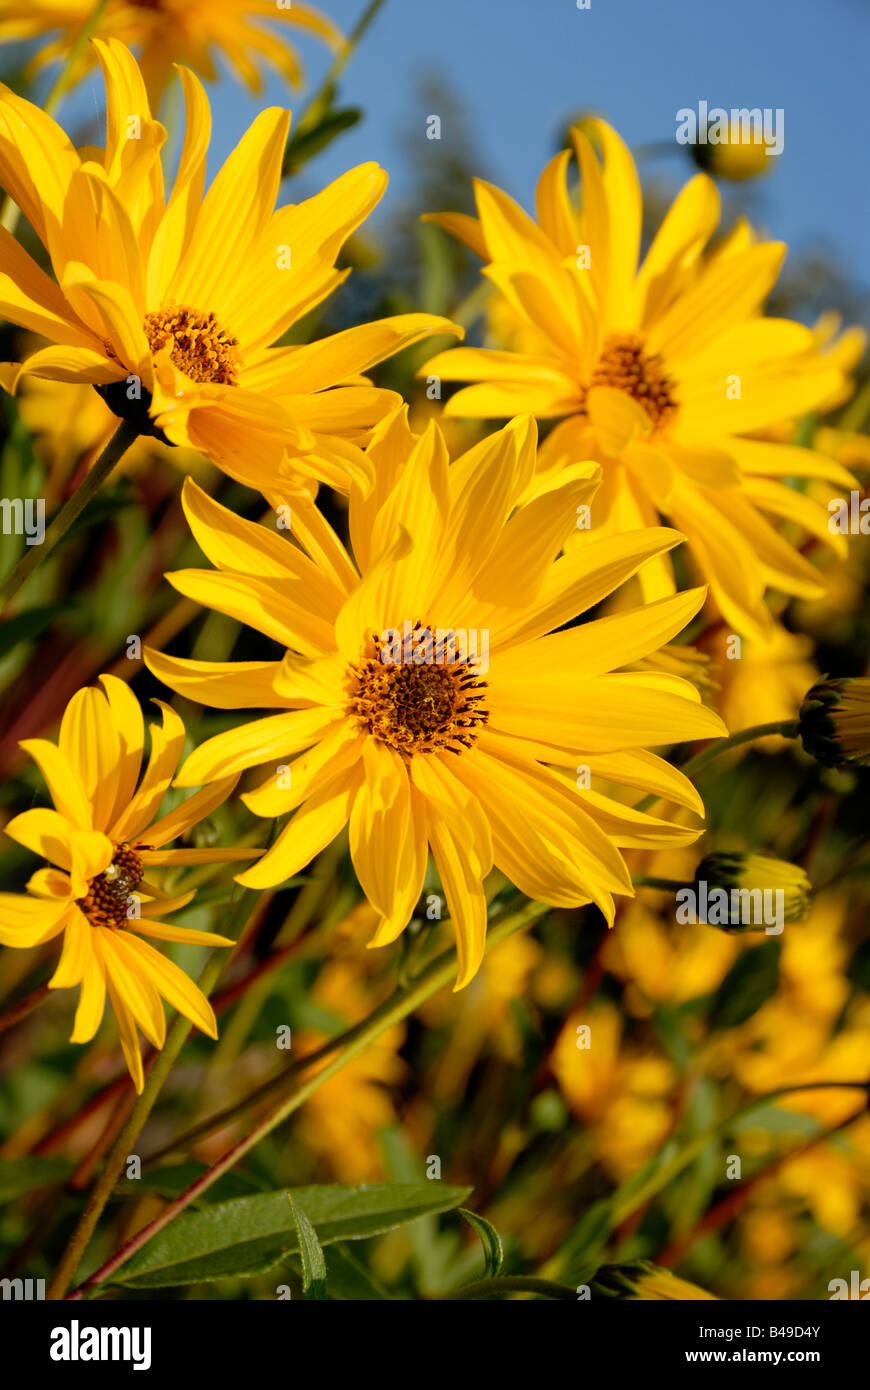 Fotos de las flores amarillas helianthus maximiliani La imagen fue tomada contra un cielo de verano azul Foto de stock